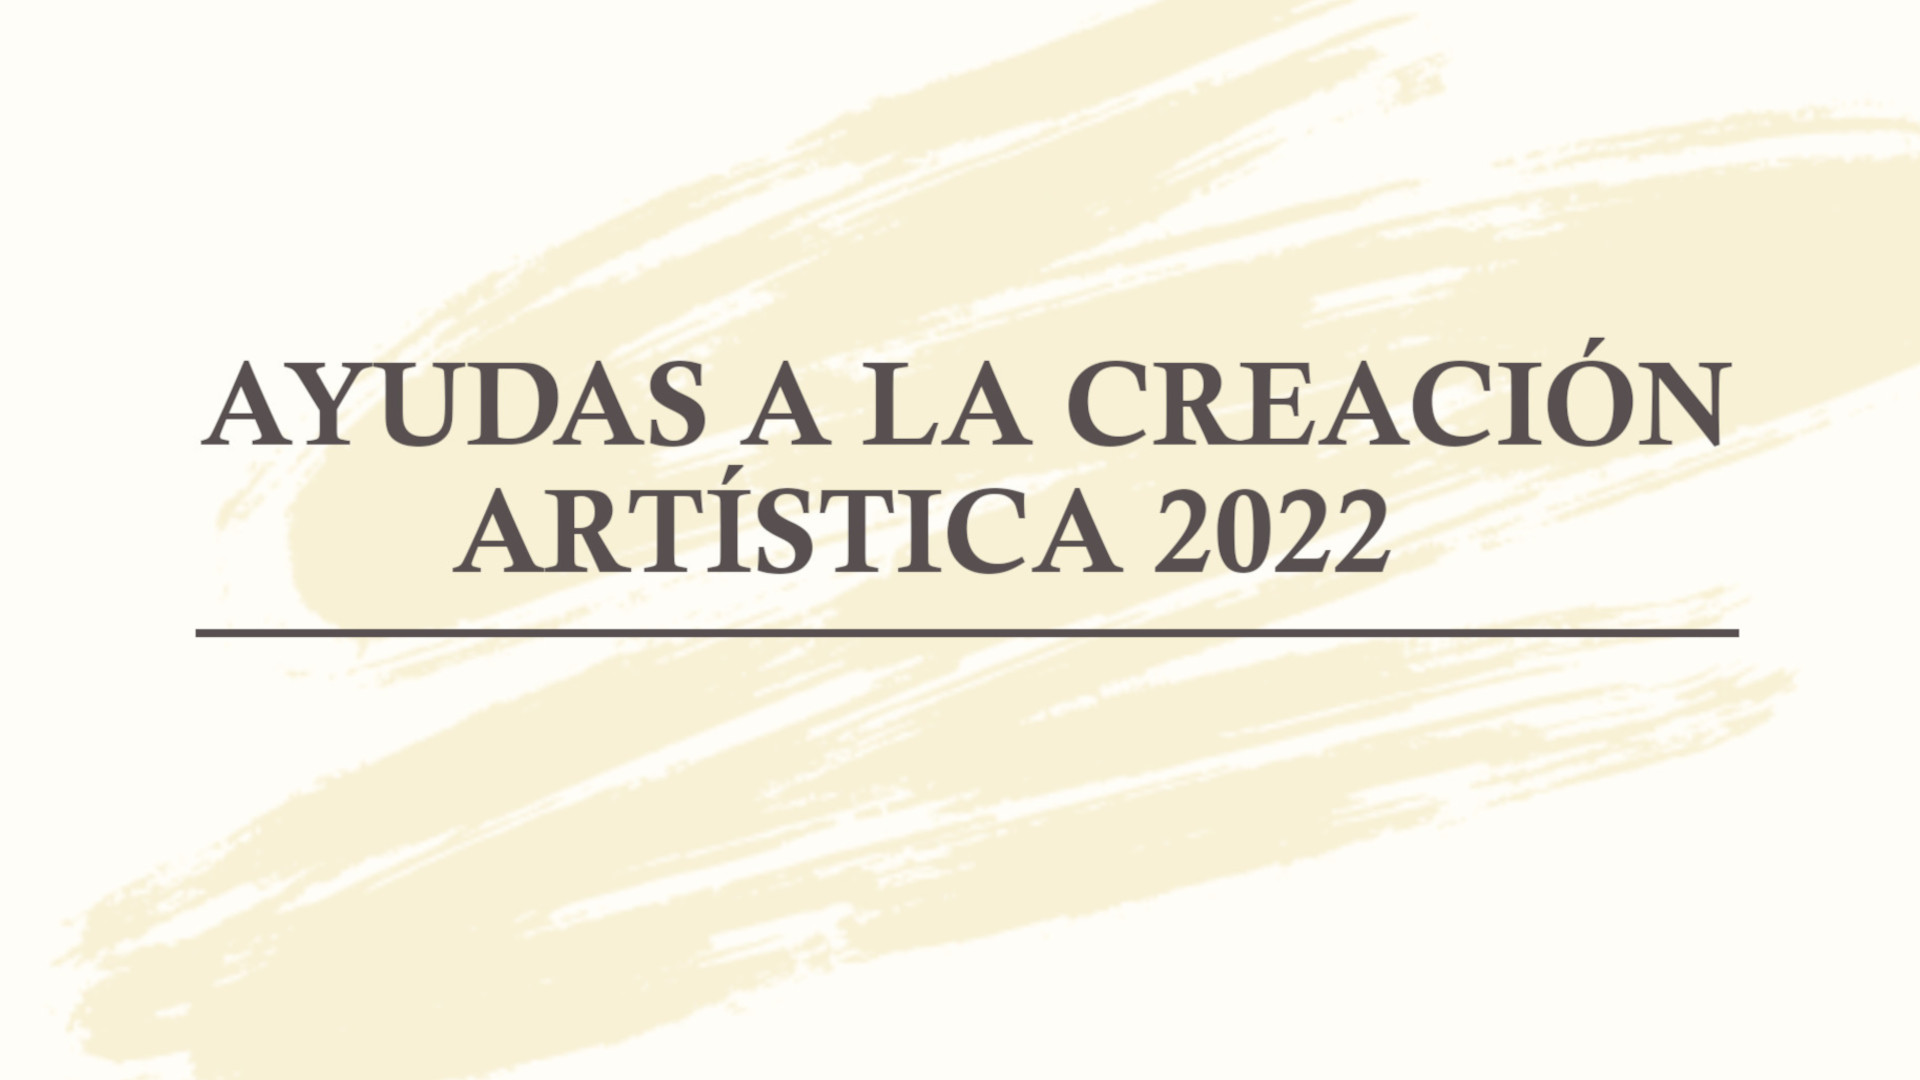 Axudas artísticas 2022